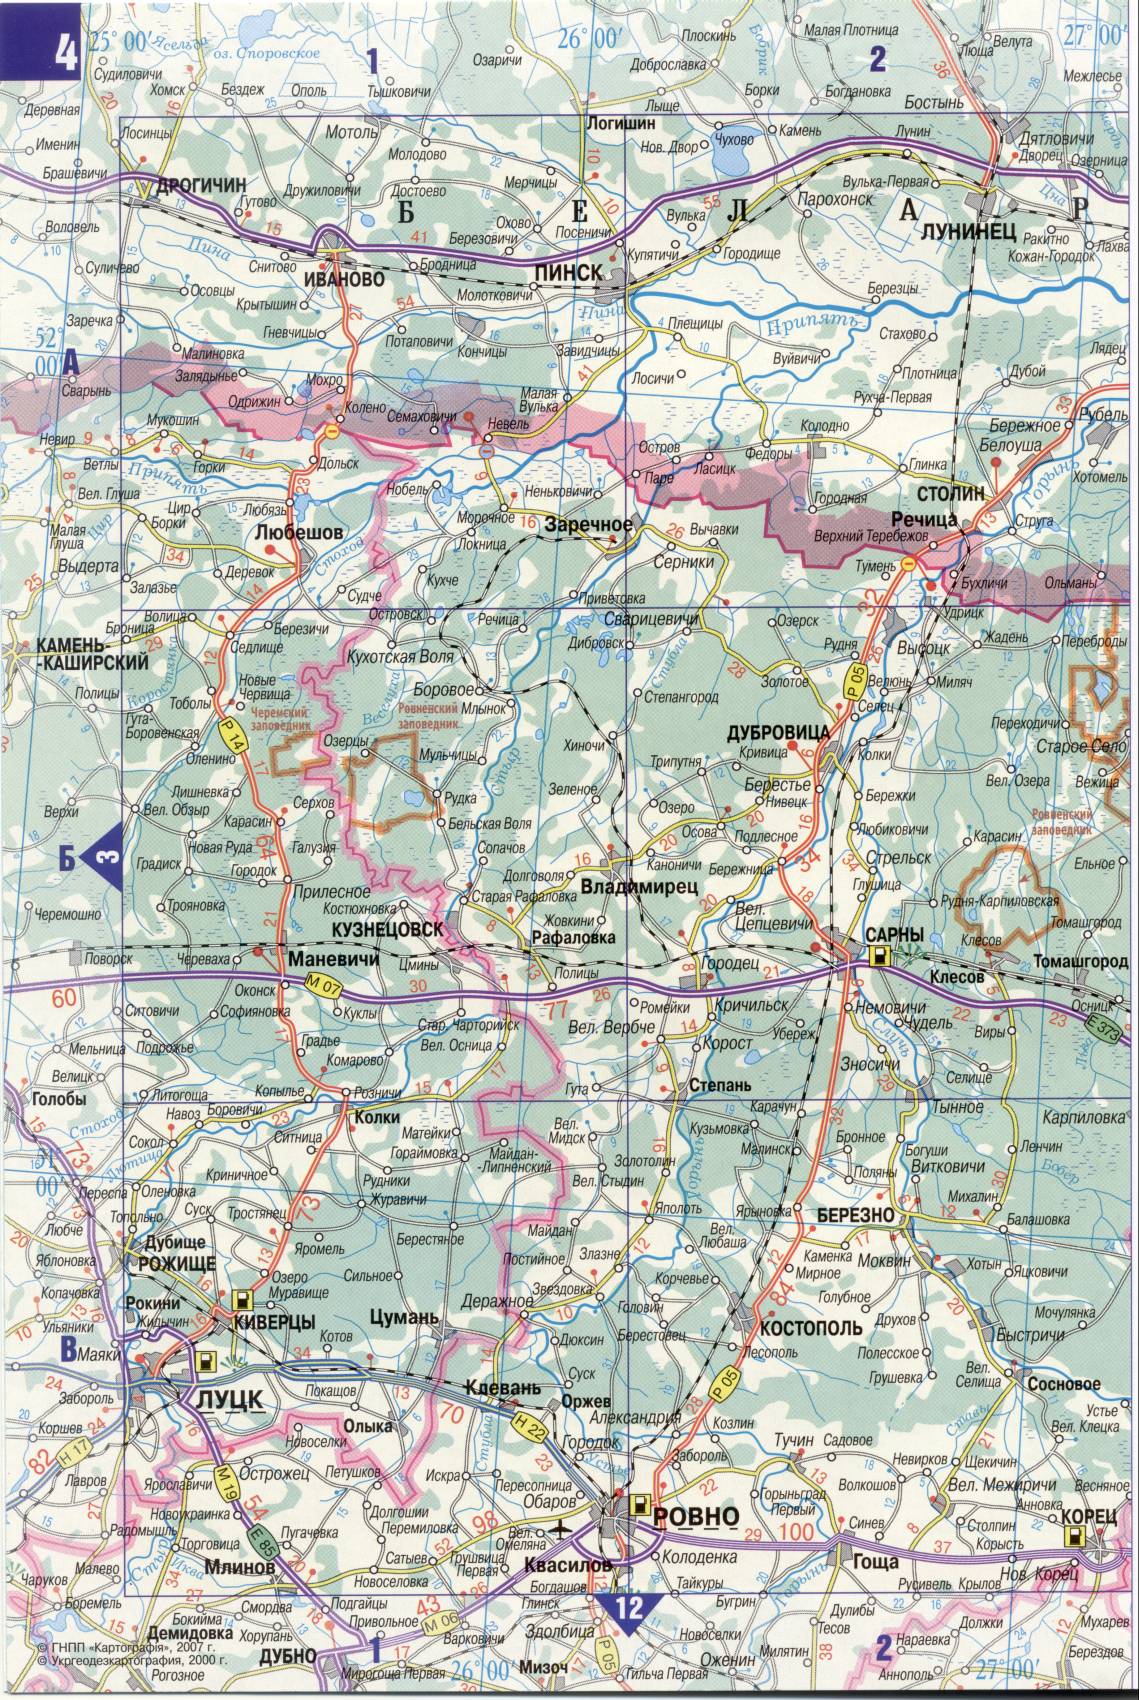 Karte der Ukraine. Detaillierte Straßenkarte der Ukraine avtomobilnog Satin. kostenlos herunterladen, C0